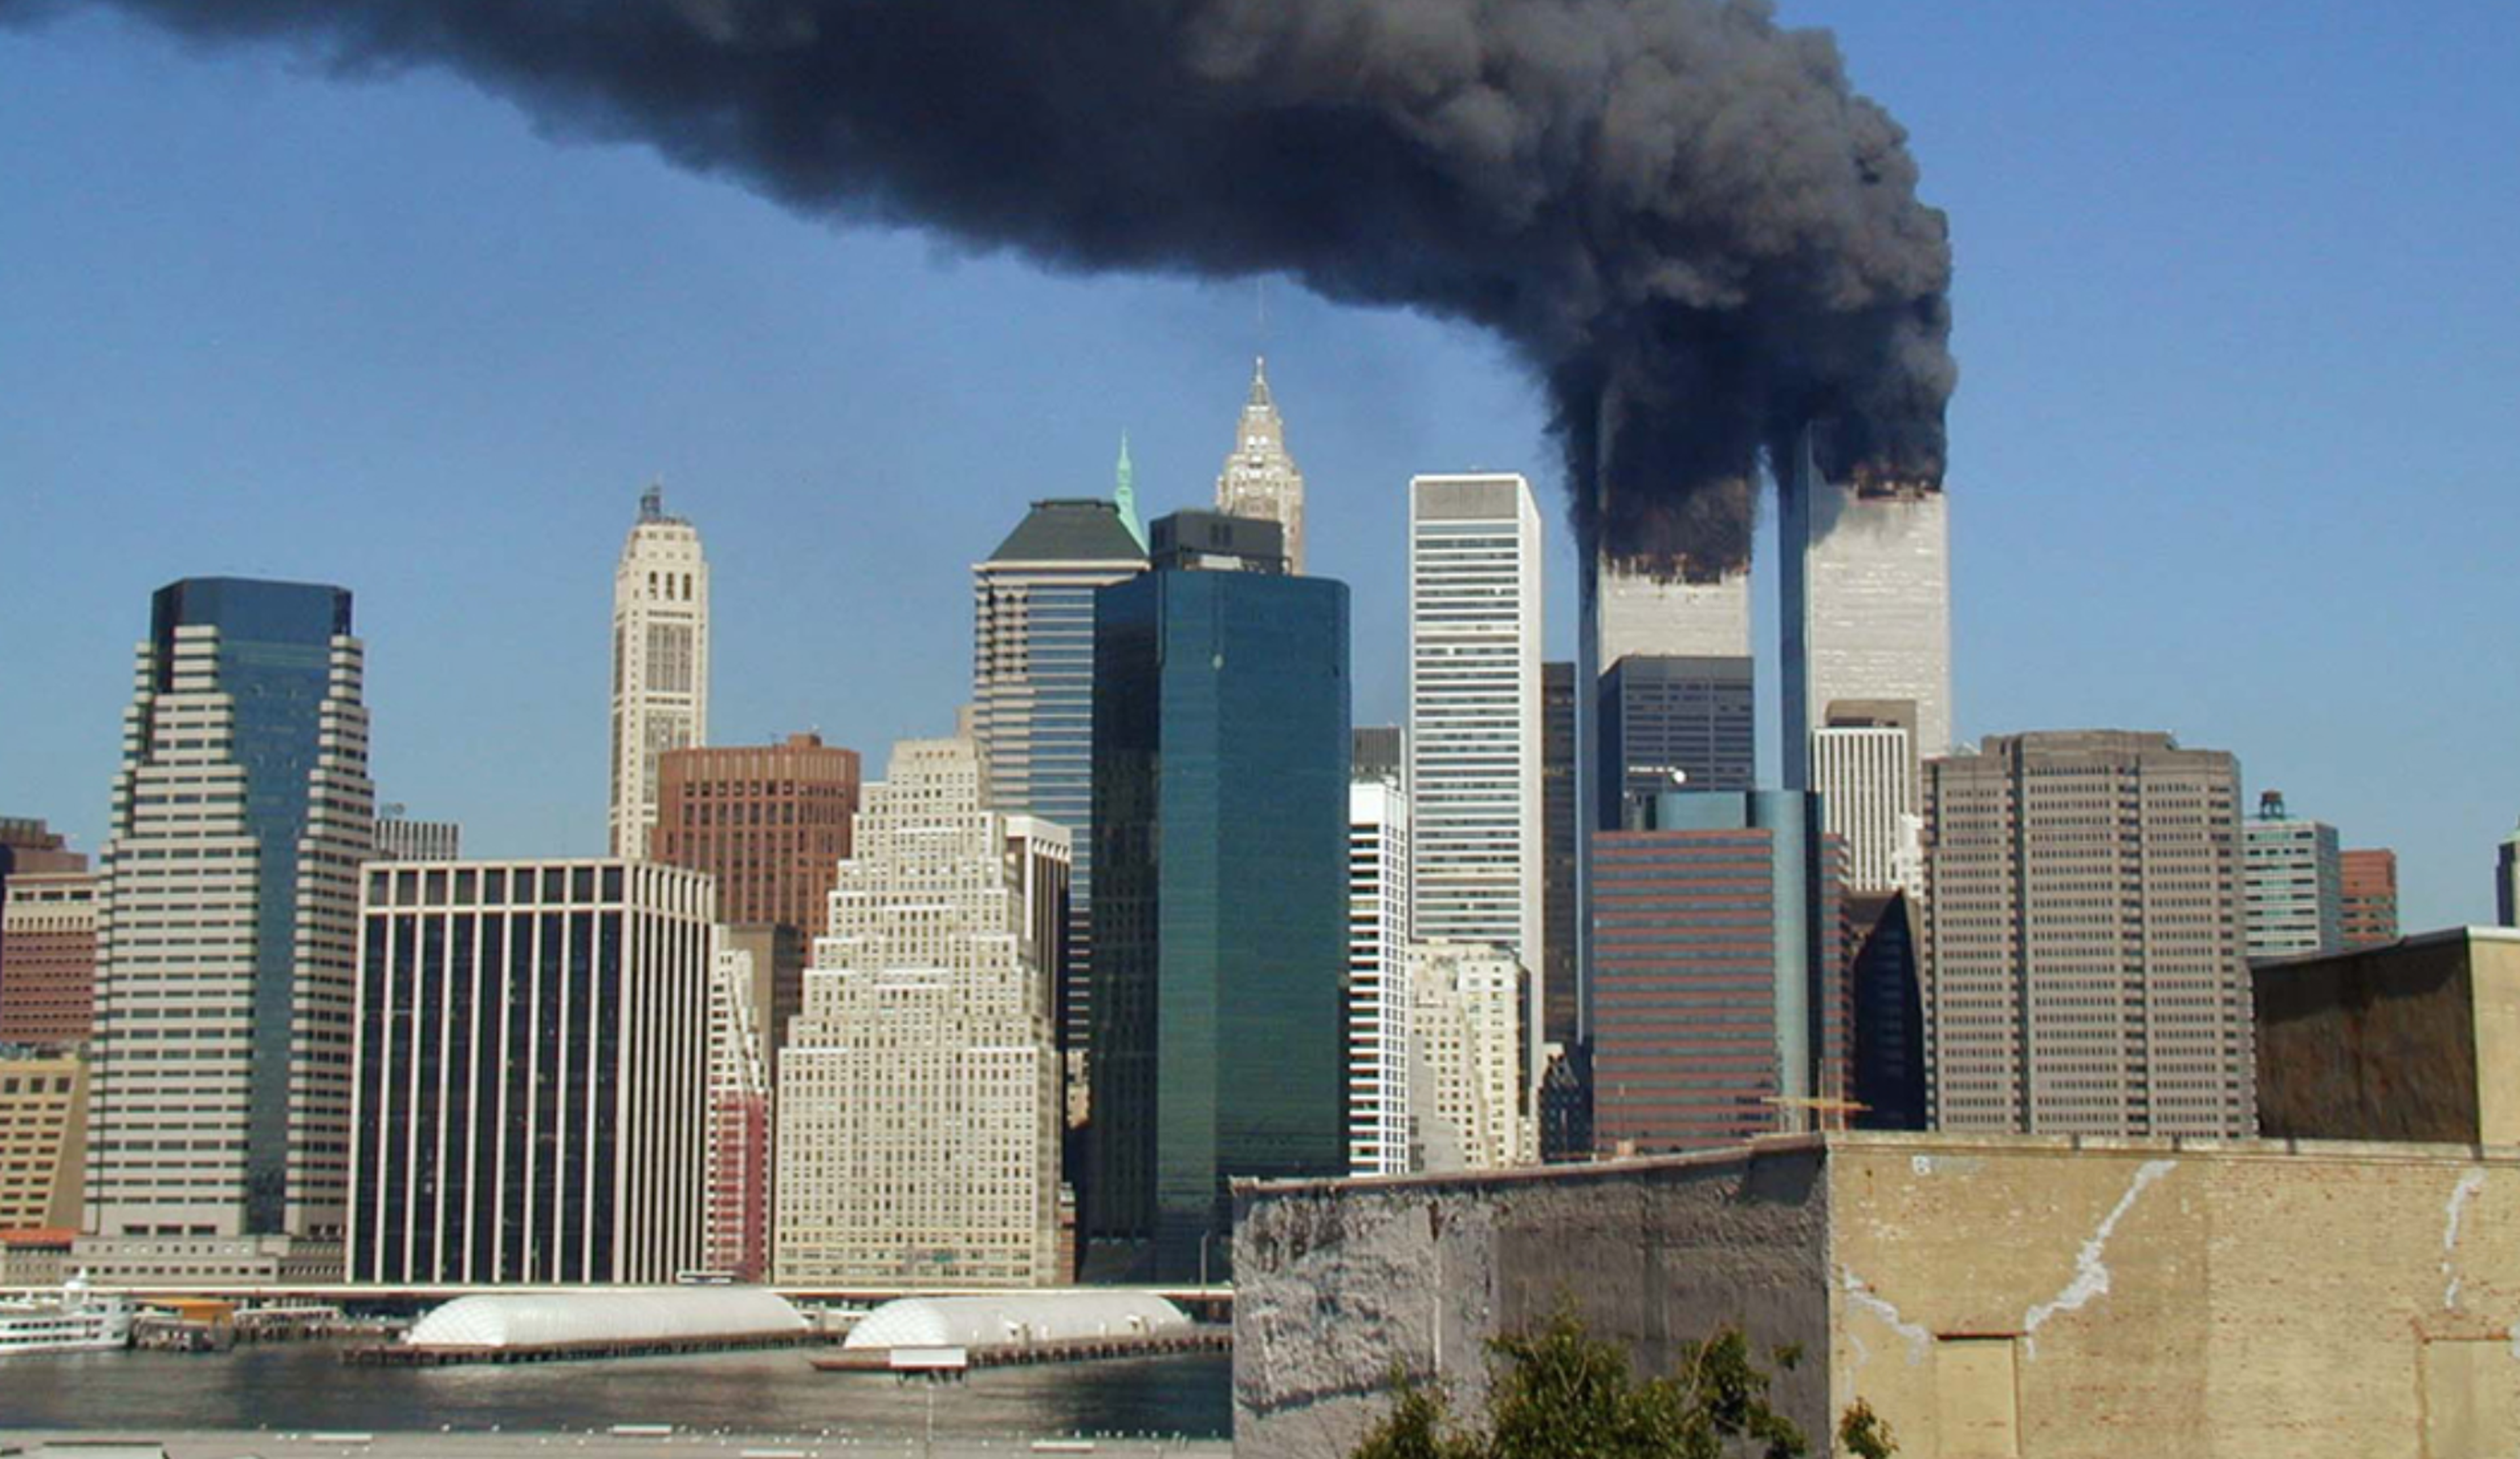 Atentados terroristas suicidas del 11 de septiembre de 2001 perpetrados por la red yihadista Al Qaeda que, mediante el secuestro de aviones comerciales para ser impactados contra las Torres Gemelas y que causaron la muerte de 2.996 personas.